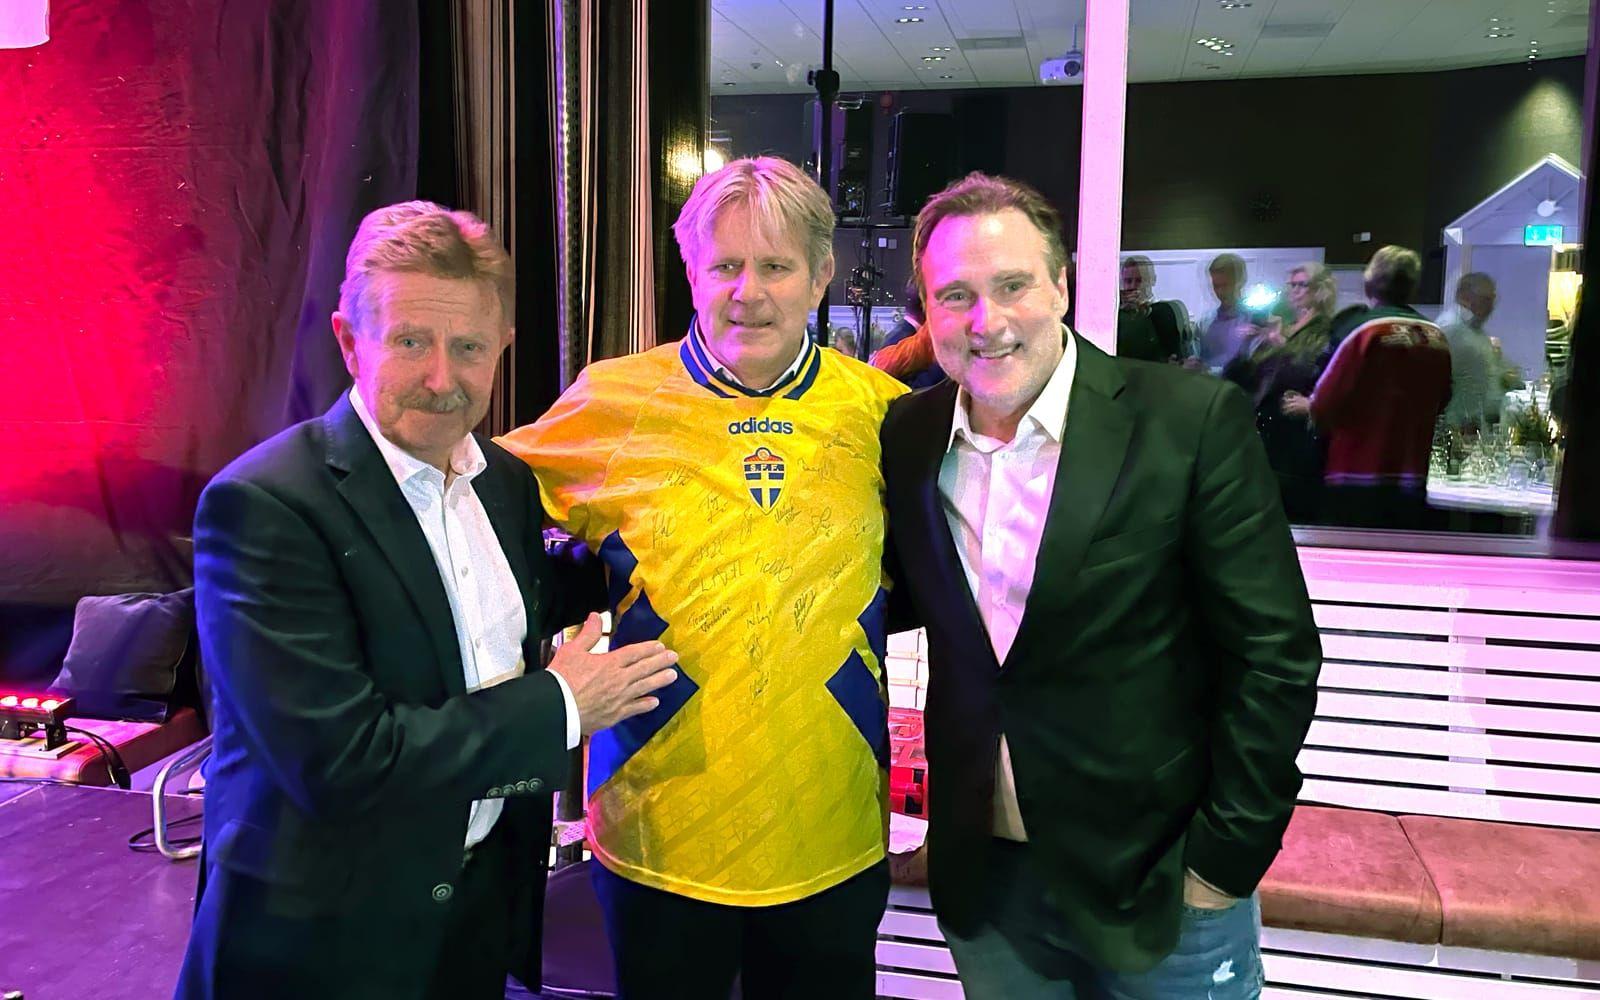 Thomas Andersson budade hem en landslagströja från 1994, signerad av det bronsvinnande svenska VM-laget i fotboll, till sina företag. Här syns han flankerad av TV-sportprofilen Staffan Lindeborg och Staffan Oldsberg, son till Ingvar Oldsberg.